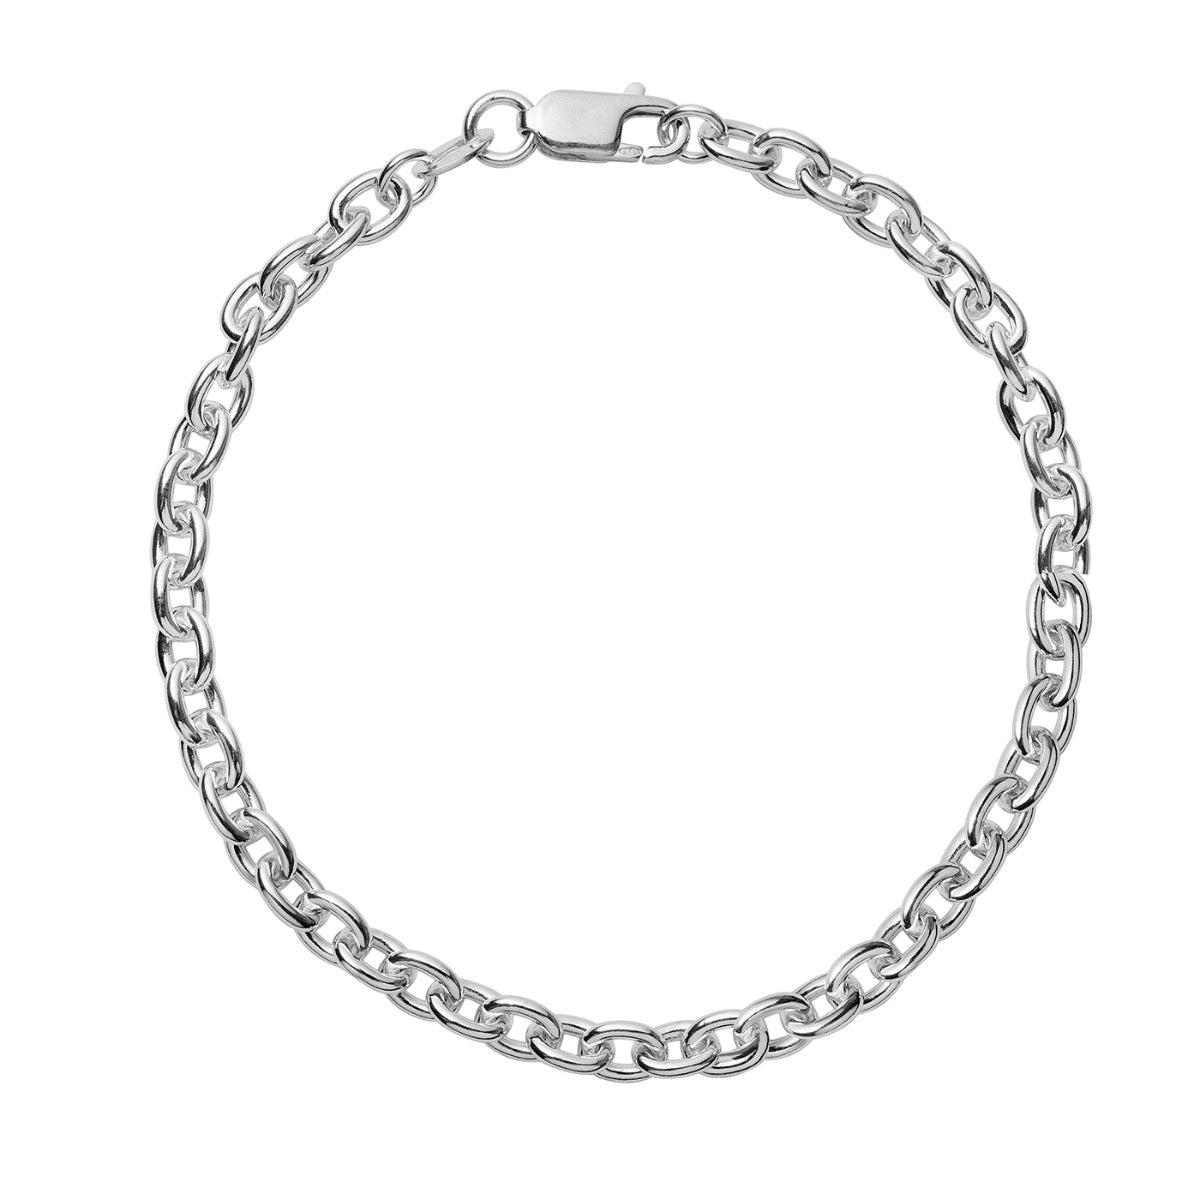 925 Casual Wear Men Silver Charm Bracelet 60g Size 9 Inch length